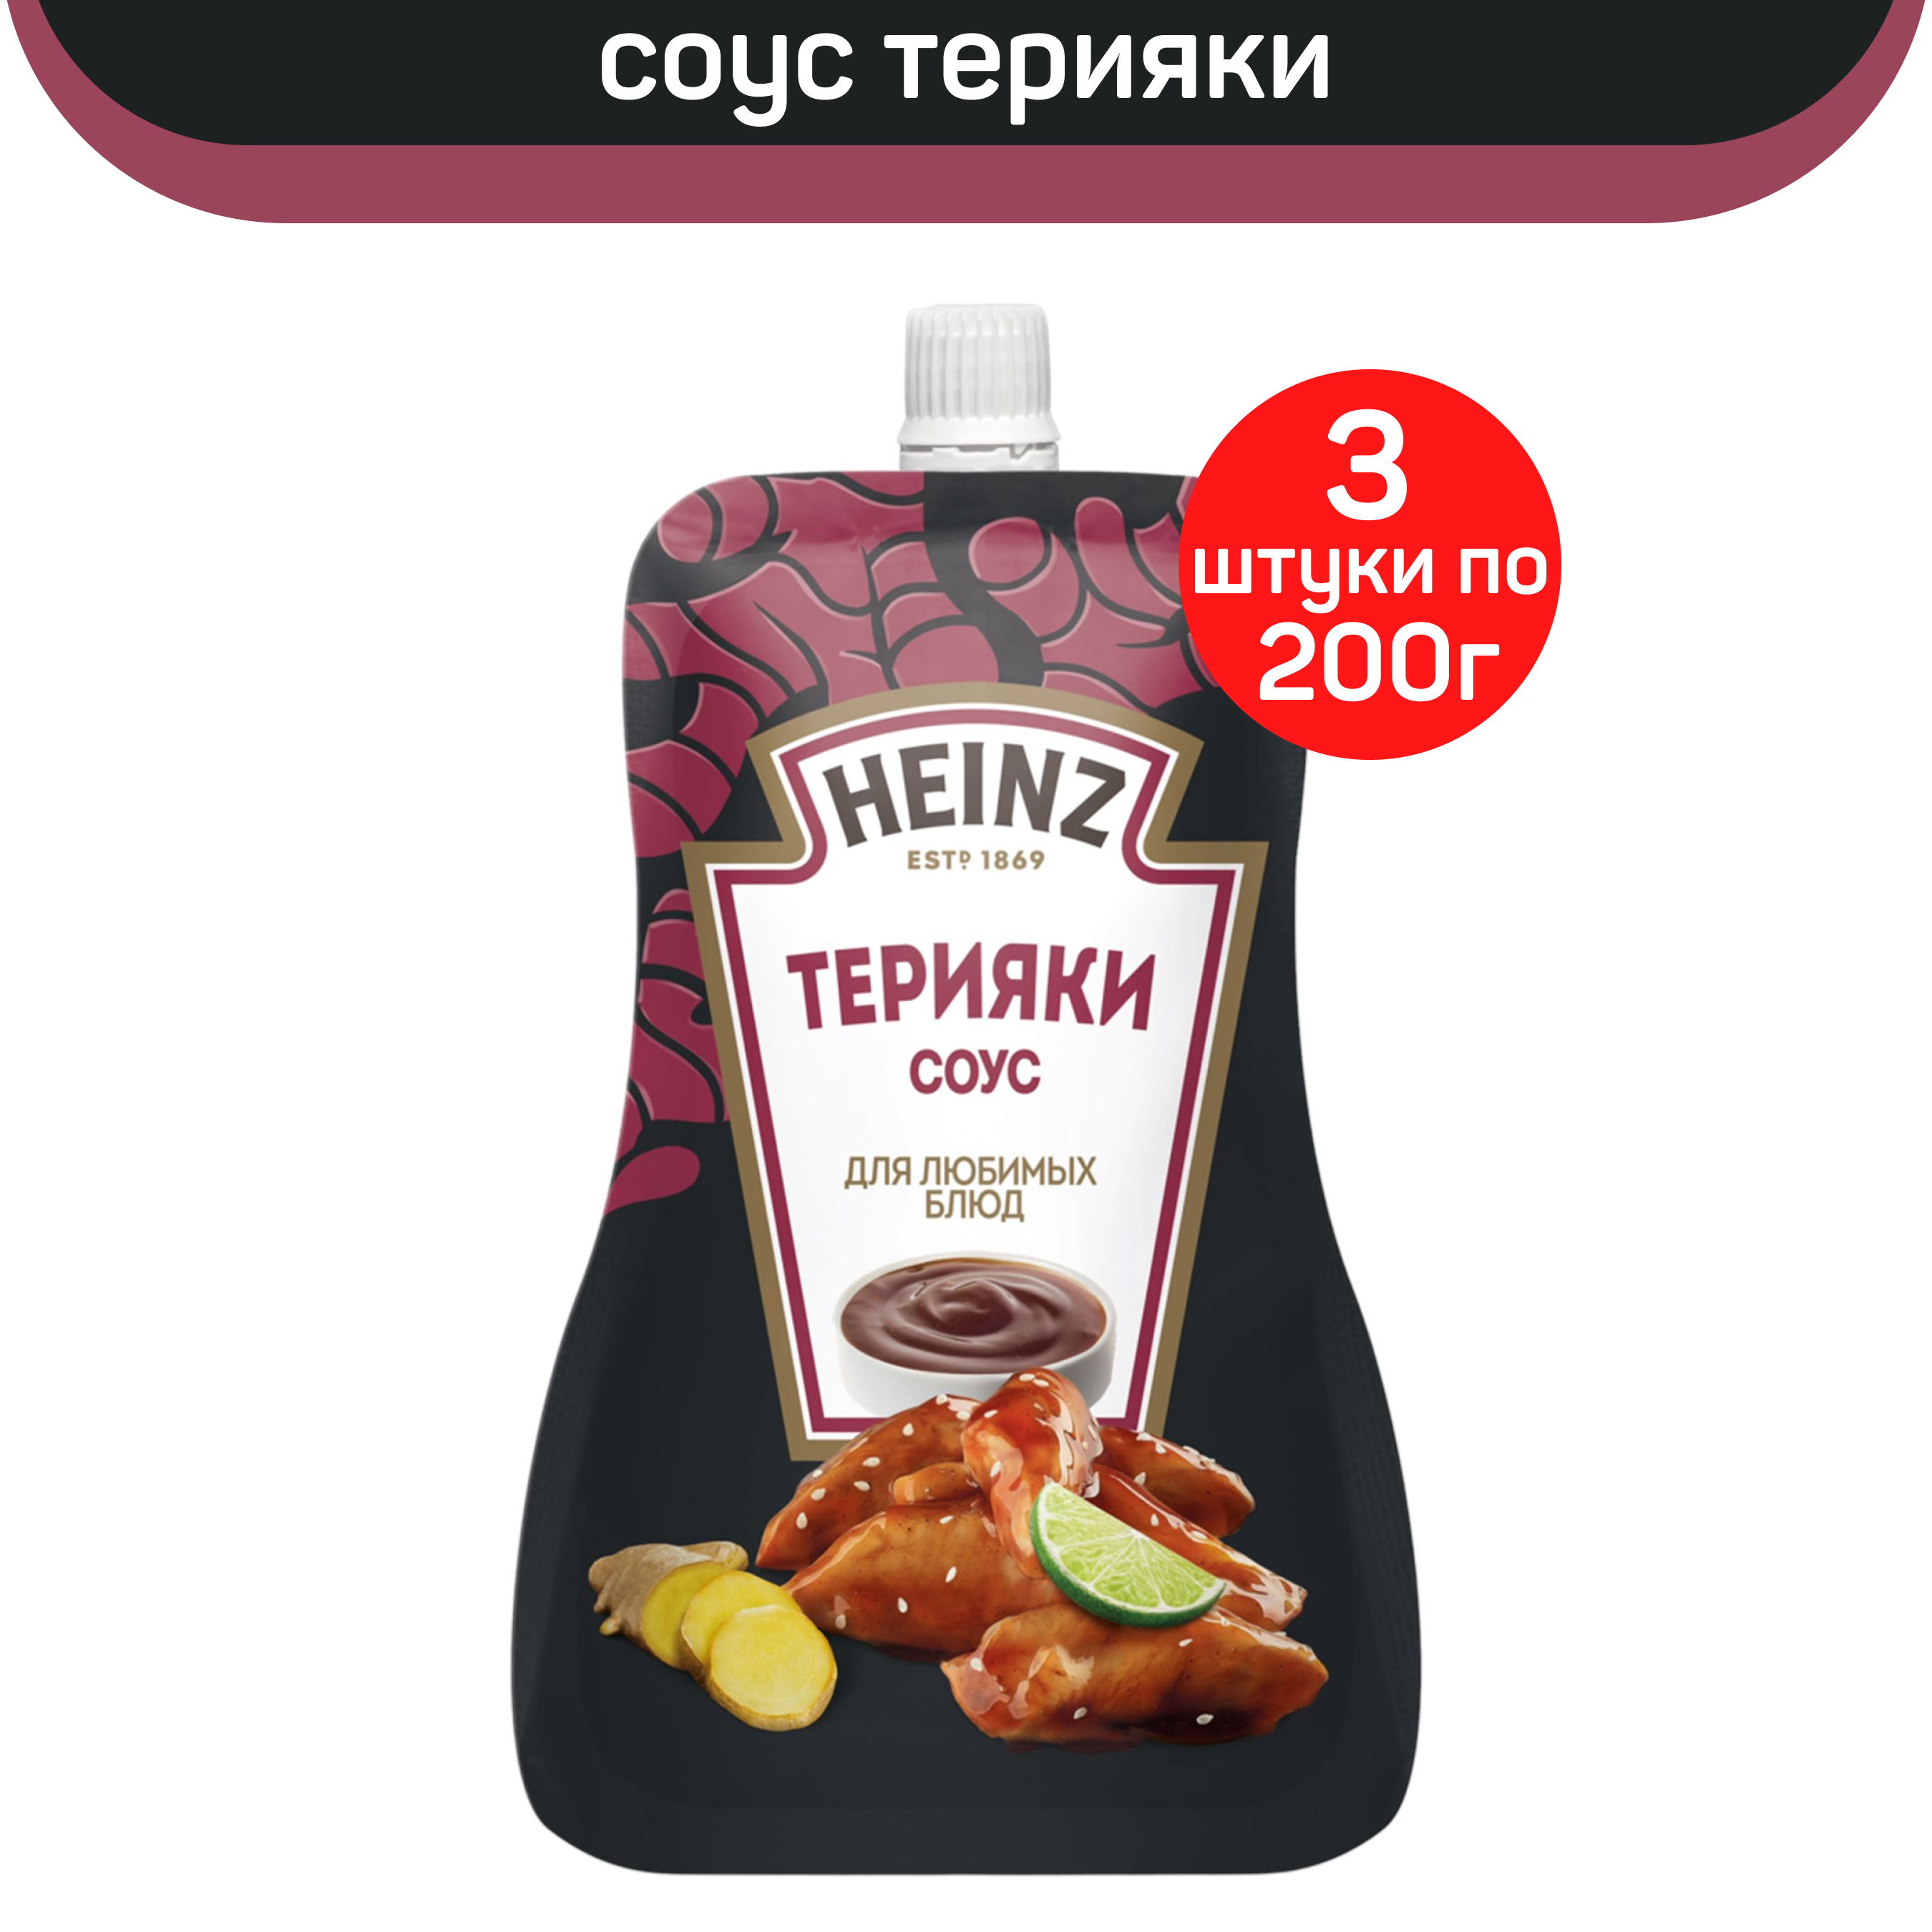 Соус Heinz деликатесный Терияки, 3 шт по 200 г